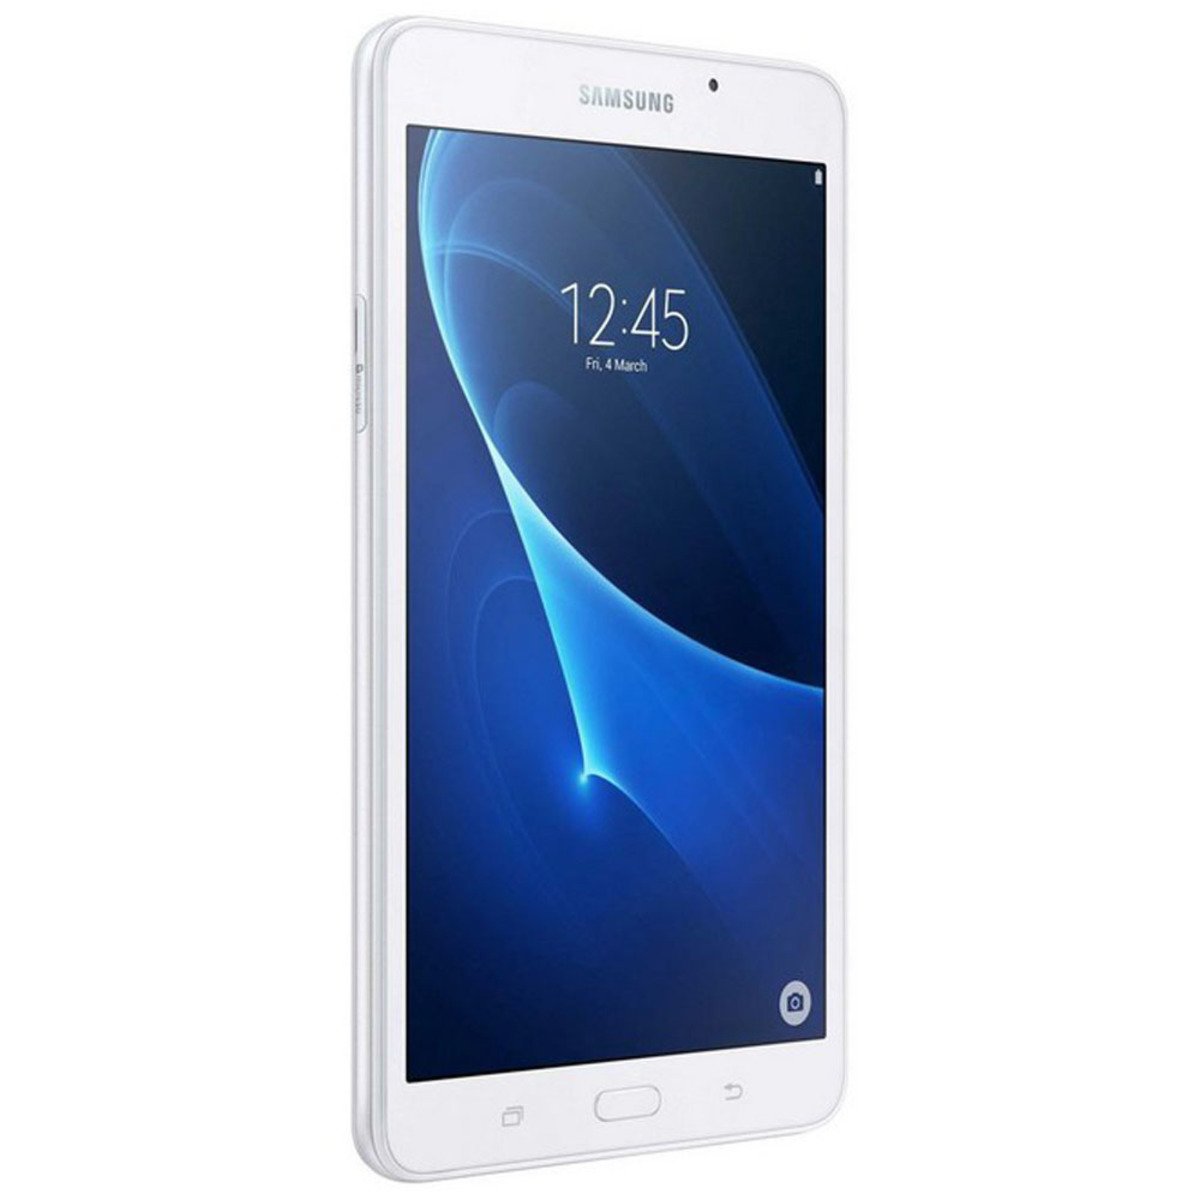 Samsung Galaxy TabA Wi-Fi SMT280 7inch 8GB White